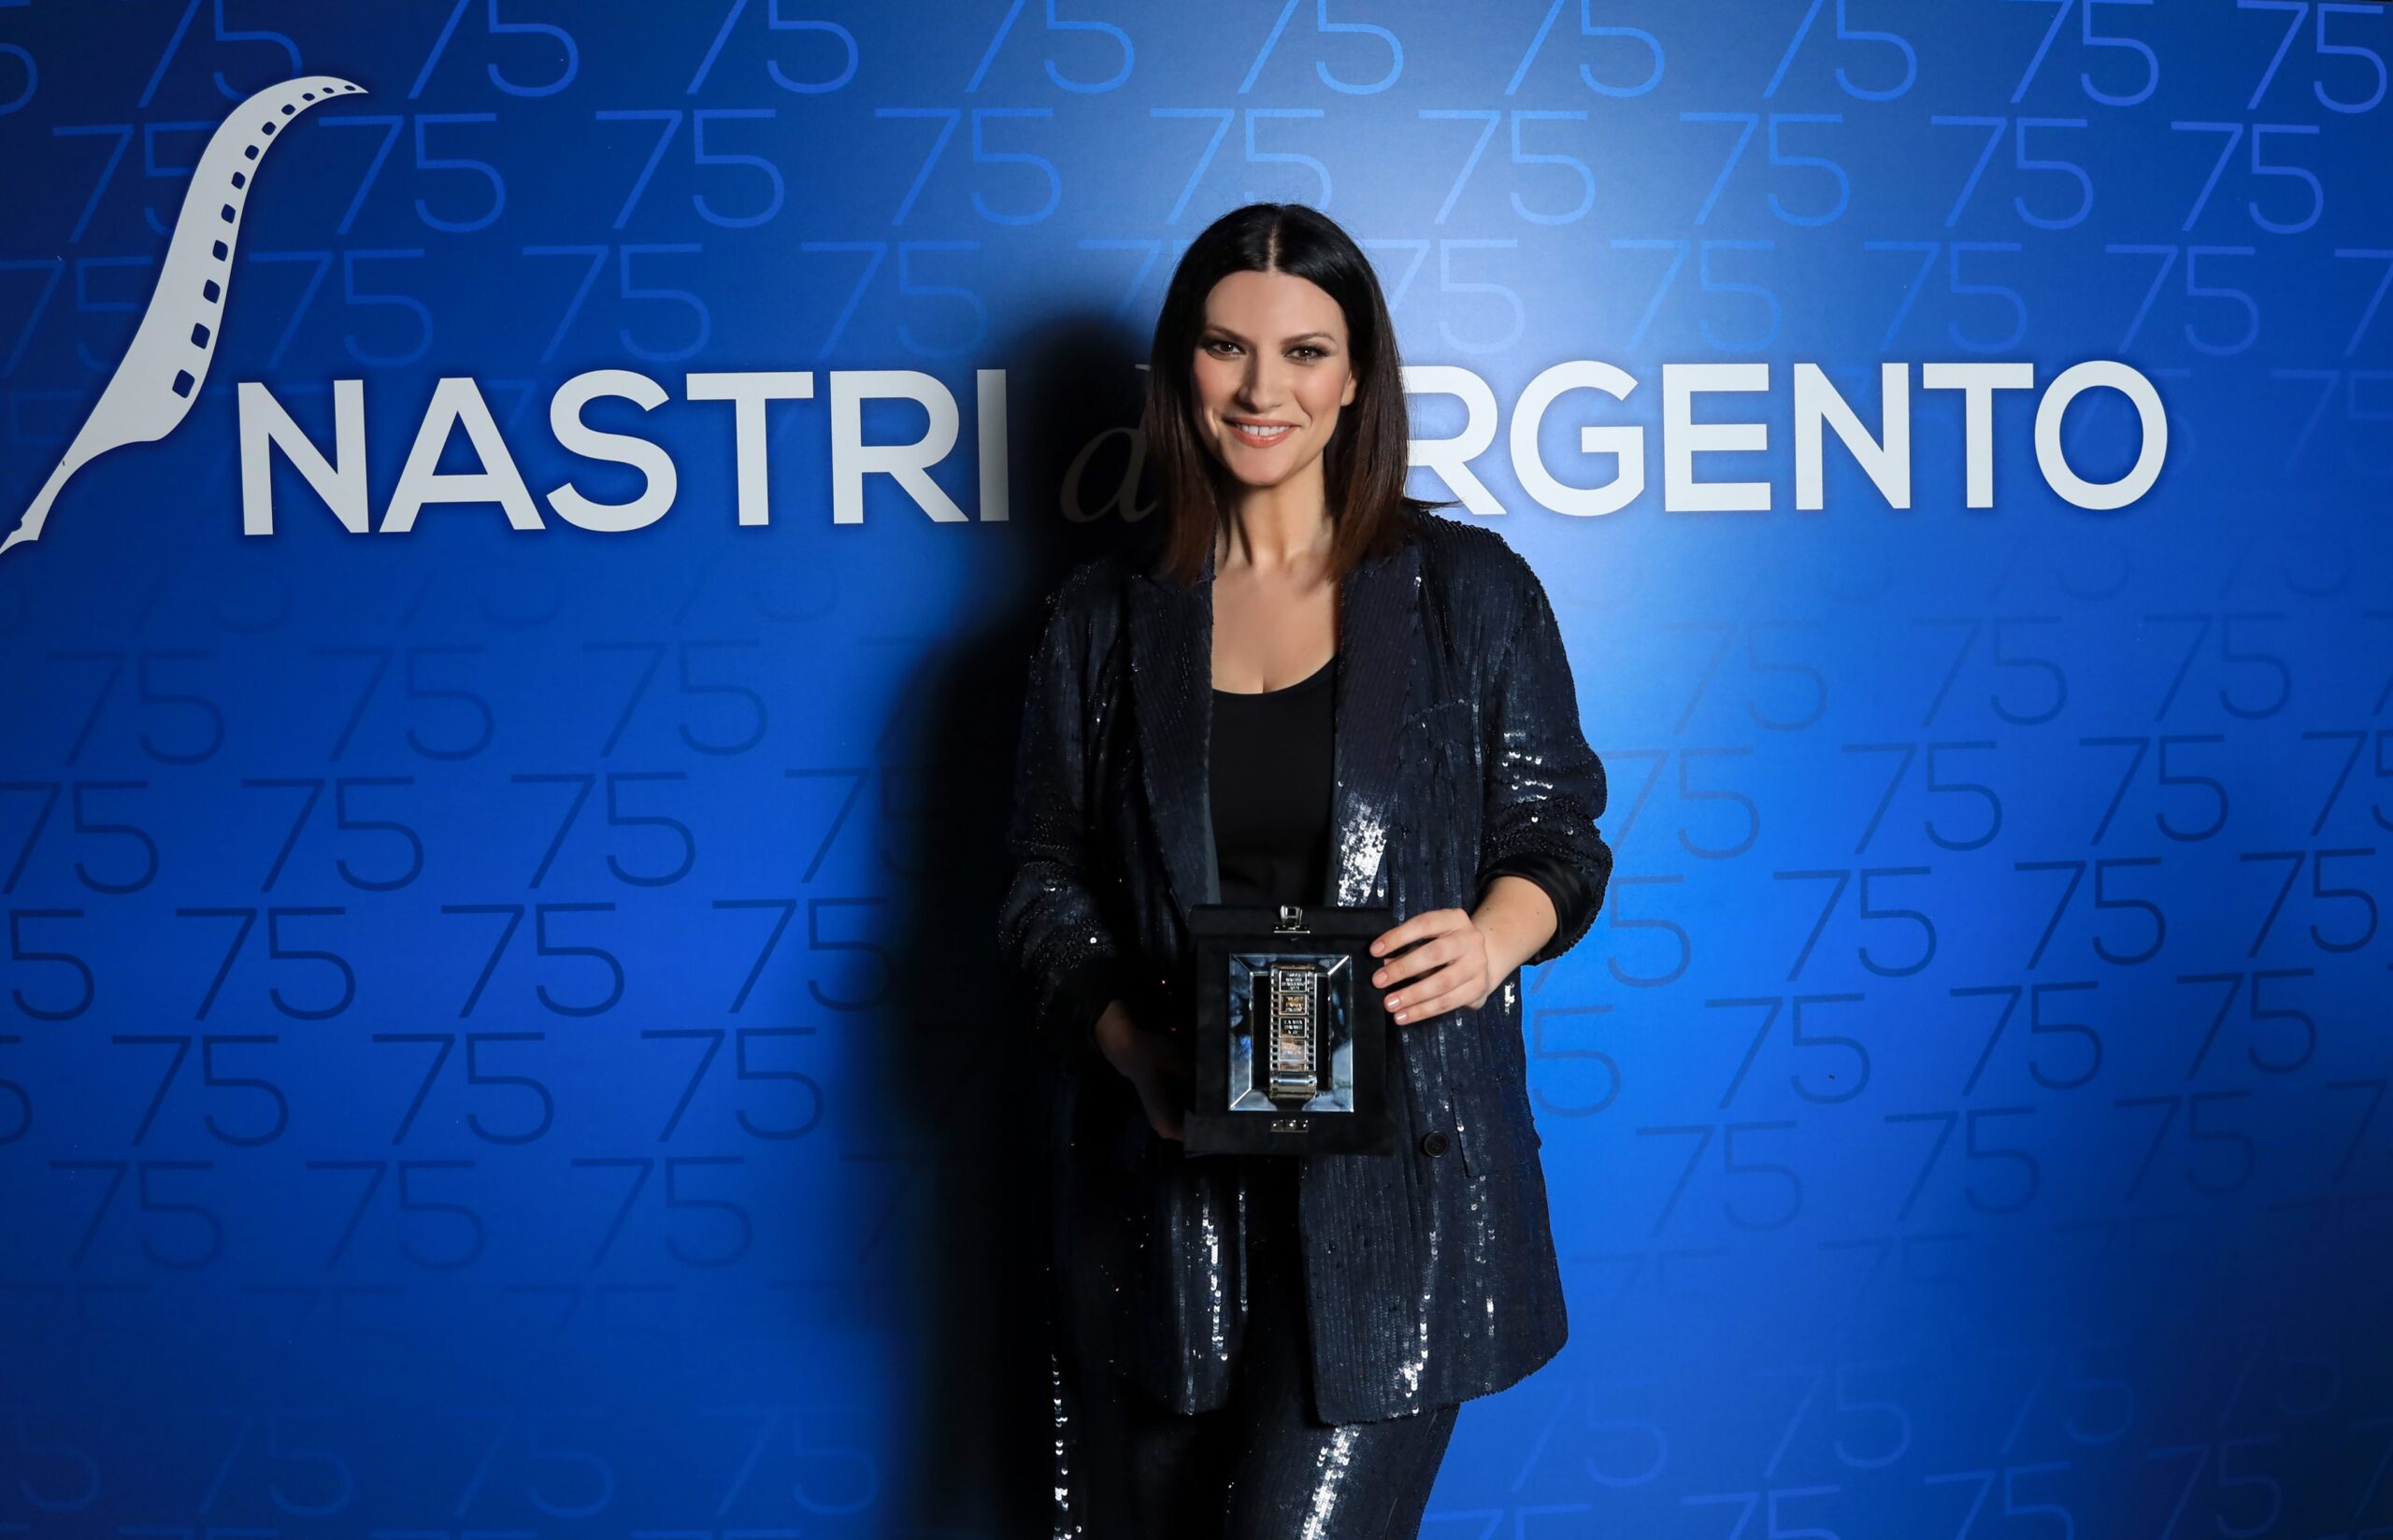 Laura Pausini Nastro d'Argento 2021